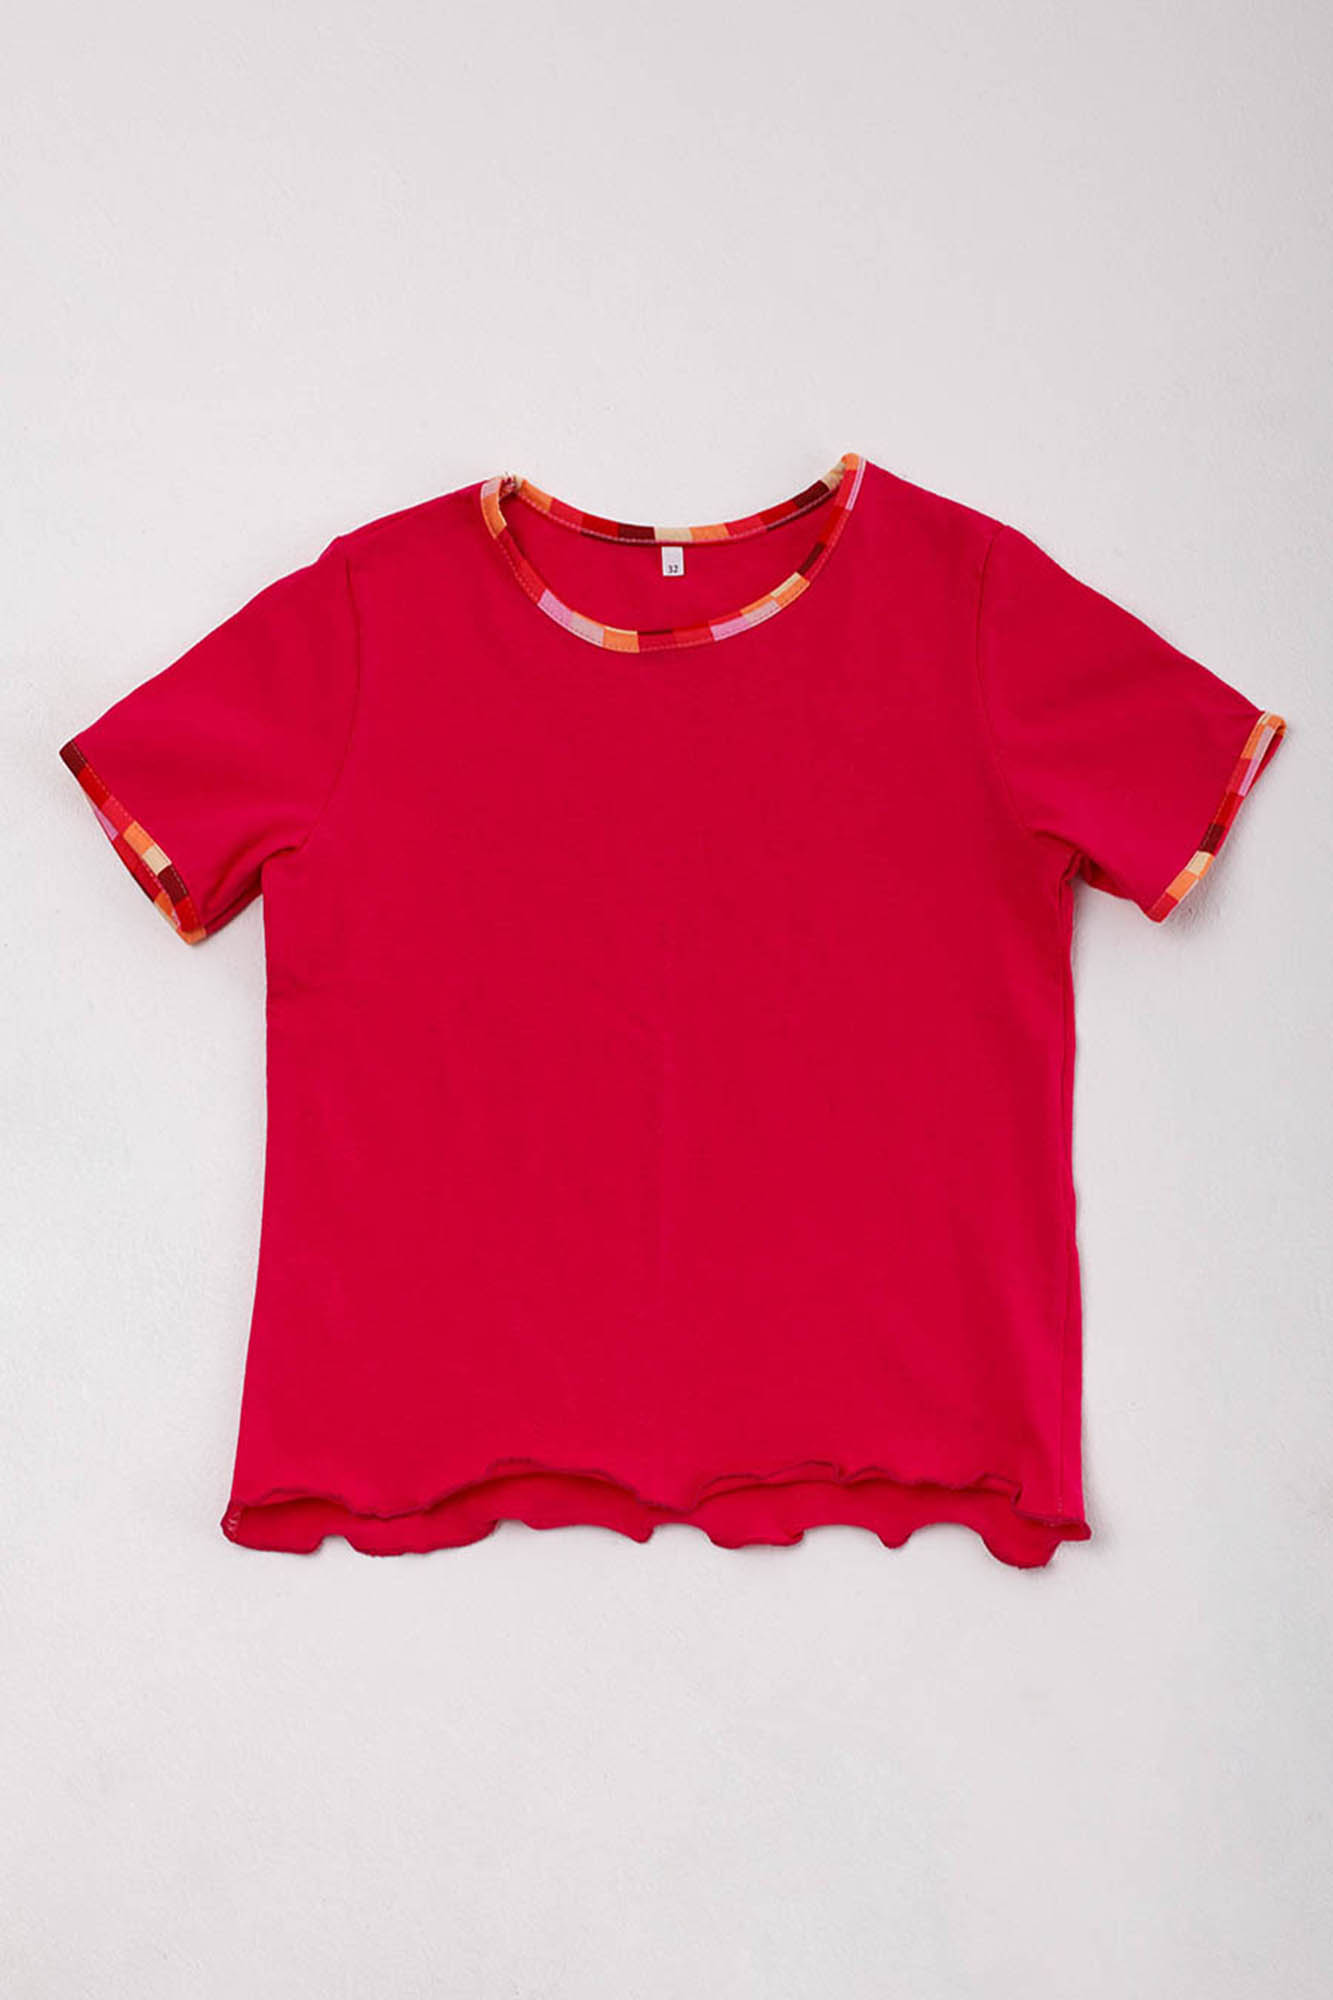 Детская футболка Aislin Цвет: Красный (5-6 лет), размер 5-6 лет